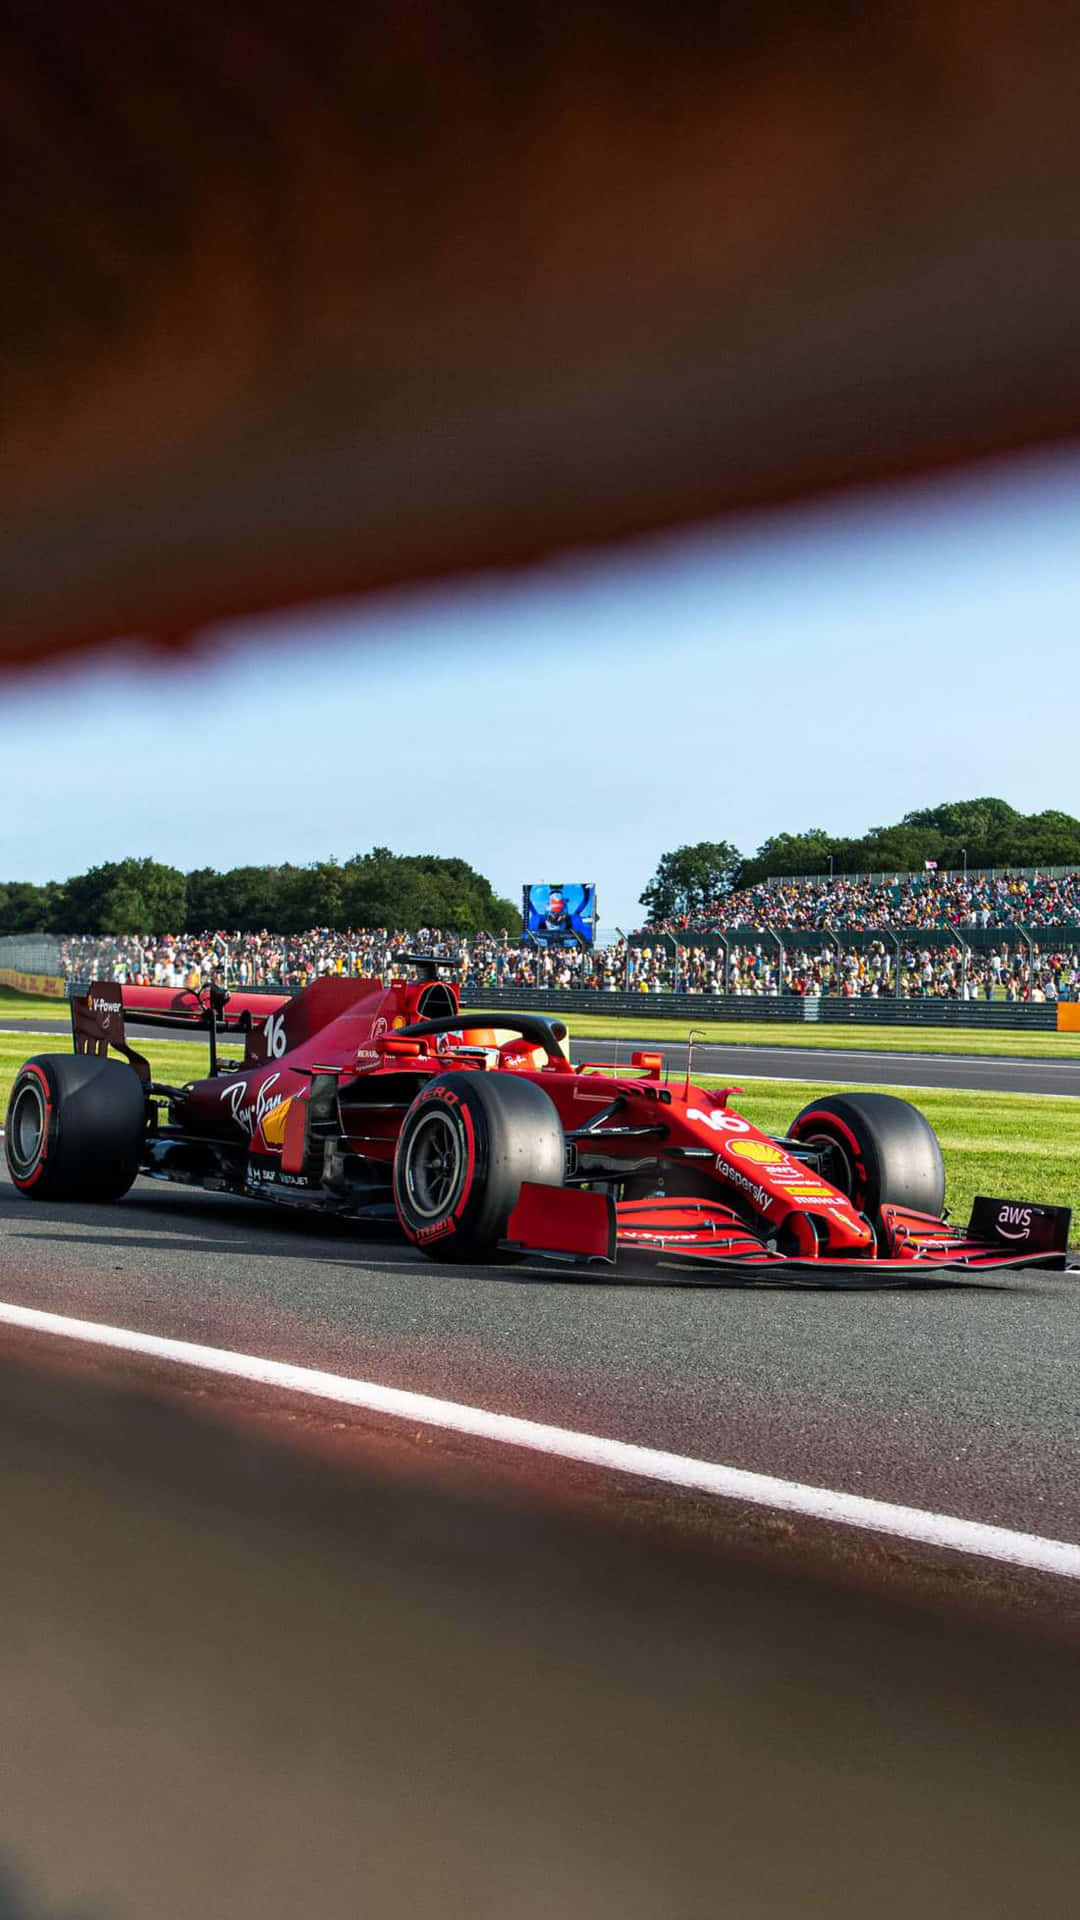 Ferrari F1-racerbil kører på en bane Wallpaper